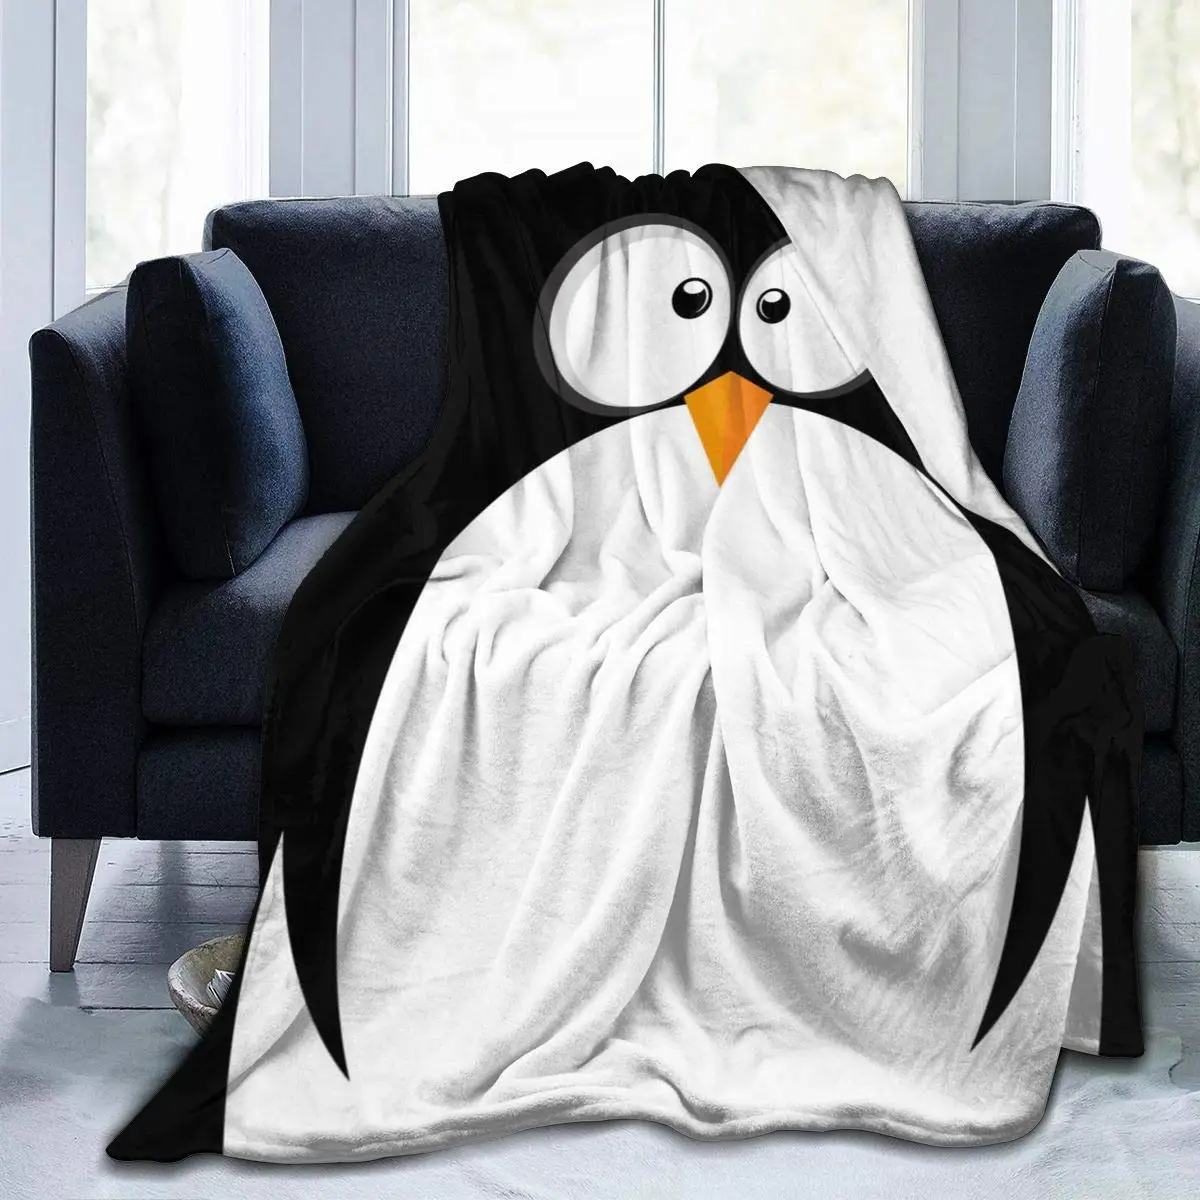 Komik penguen yüz battaniye yatak battaniyesi olarak yatak örtüsü/yatak örtüsü/yatak örtüsü yumuşak, hafif atmak battaniye sıcak ve rahat erkekler için